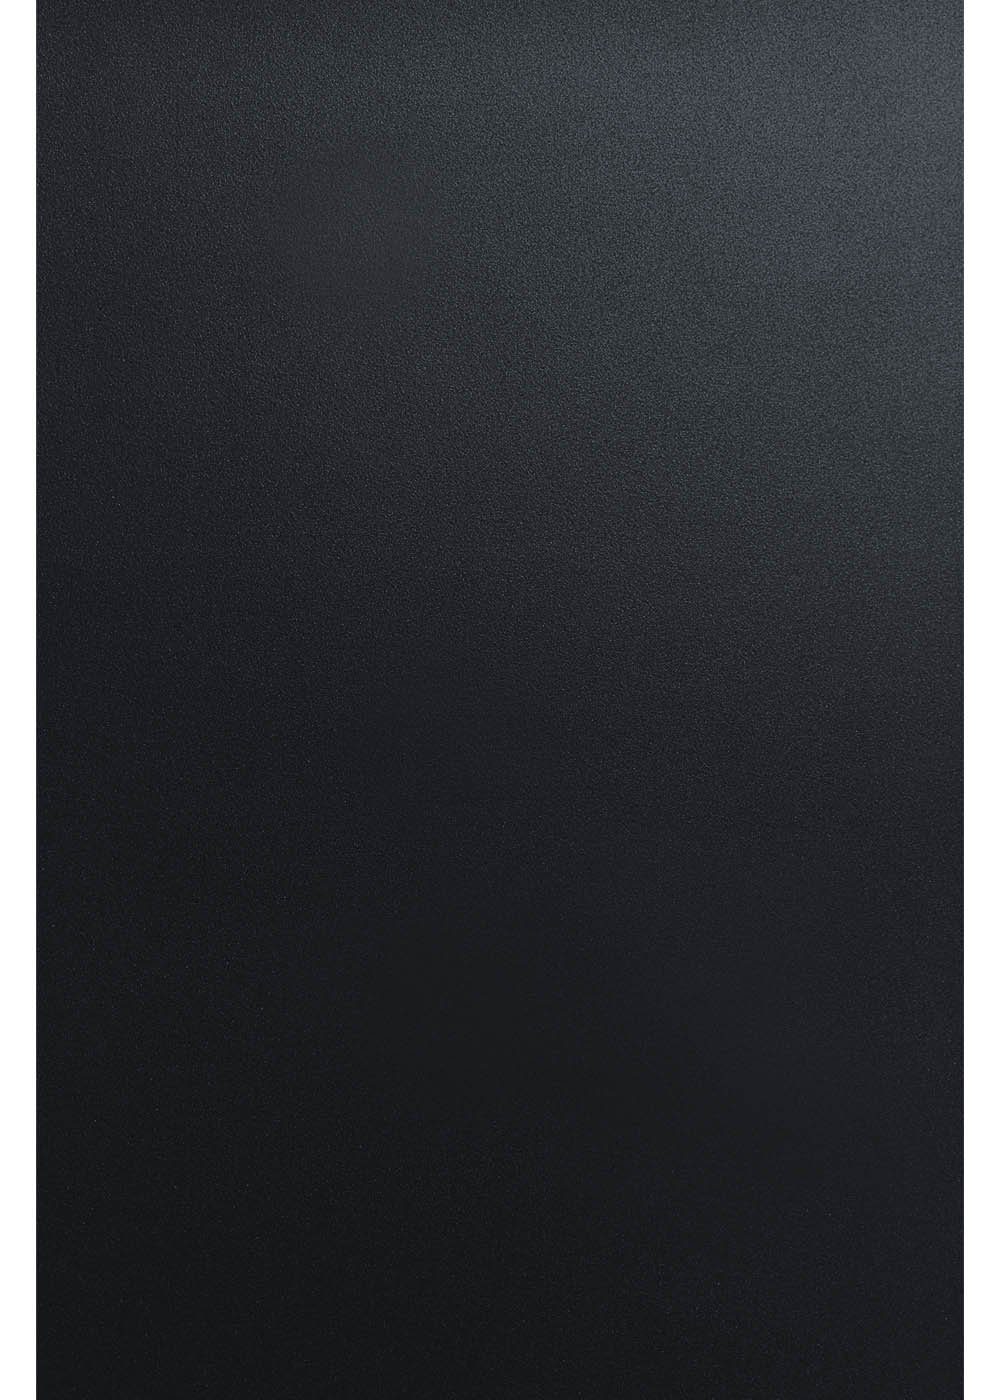 Hilltop Transparentpapier Reflektierende Transferfolie, Textilfolie, mehrfarbig, 30x20 cm Schwarz